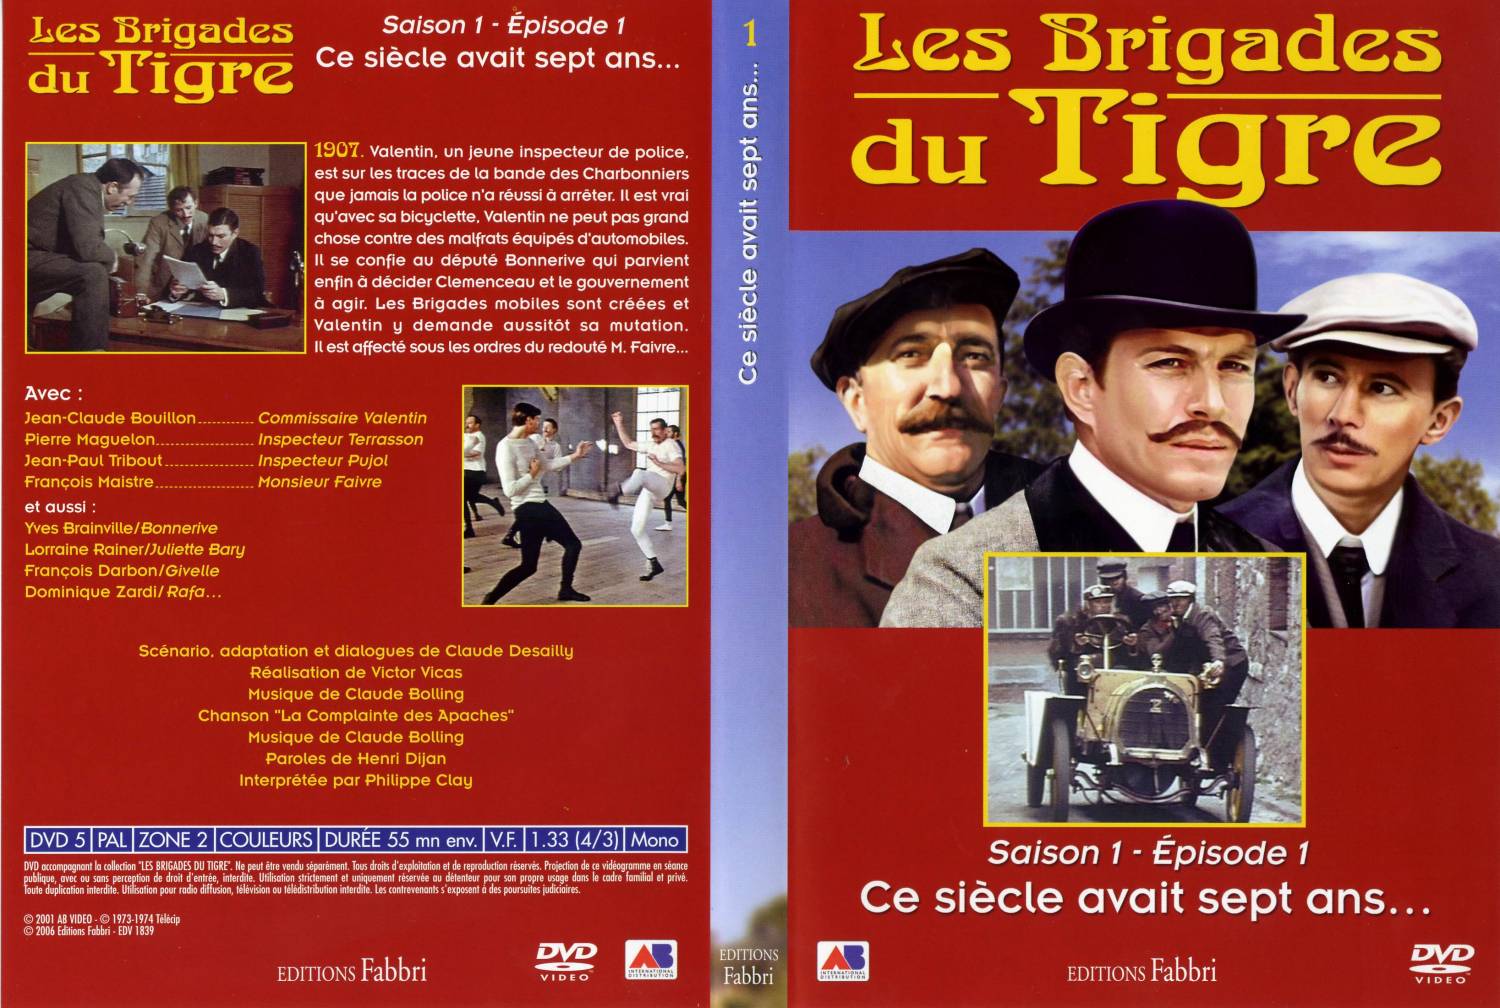 Jaquette DVD Les brigades du tigre saison 1 pisode 1